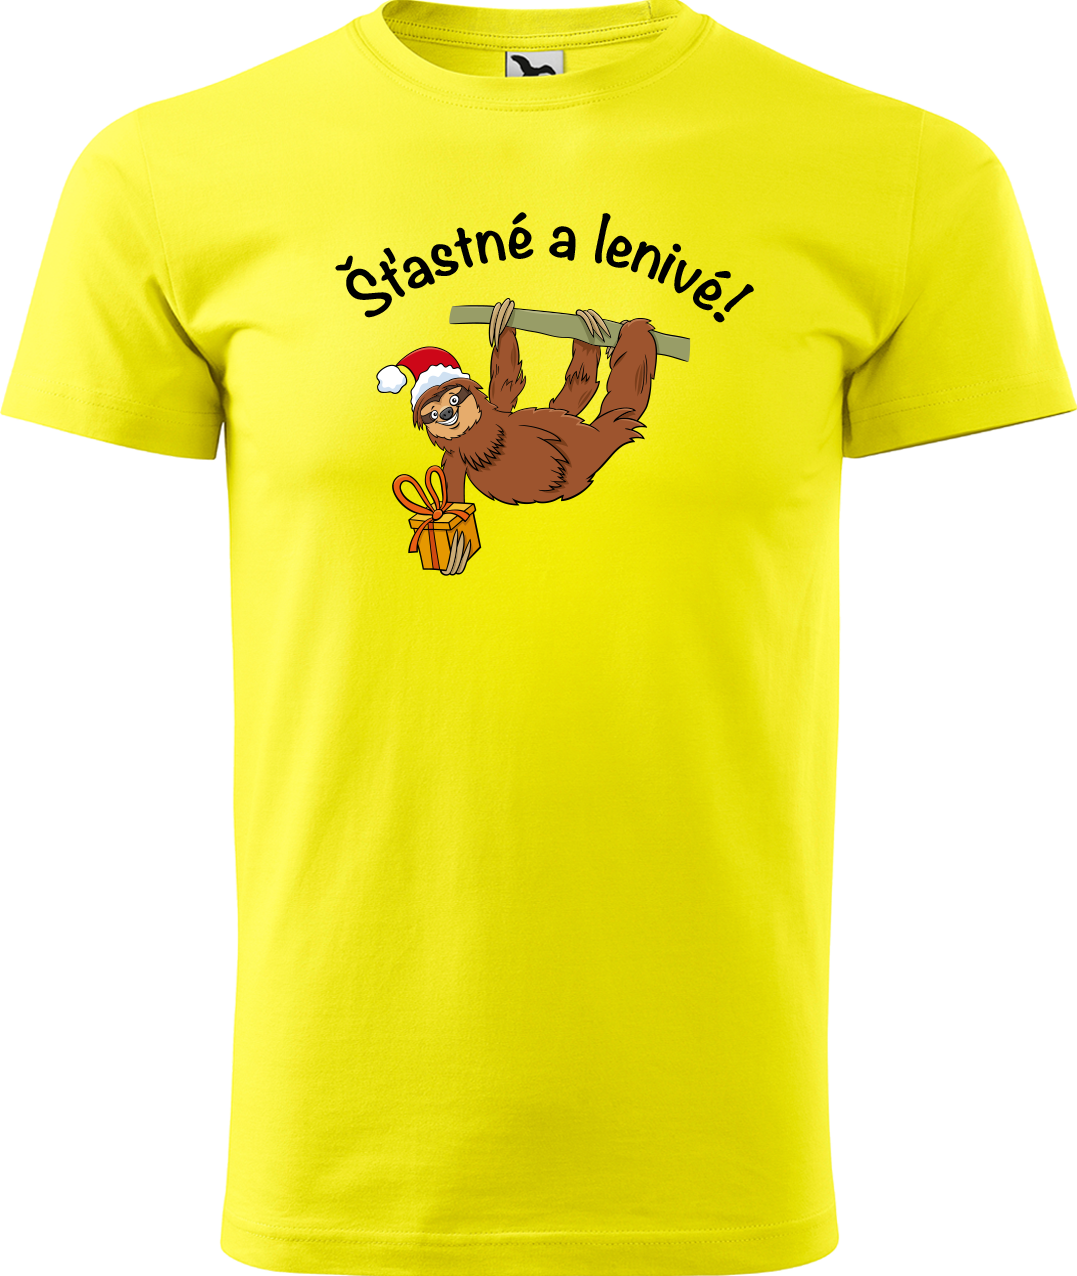 Pánské vánoční tričko - Šťastné a lenivé! Velikost: S, Barva: Žlutá (04)